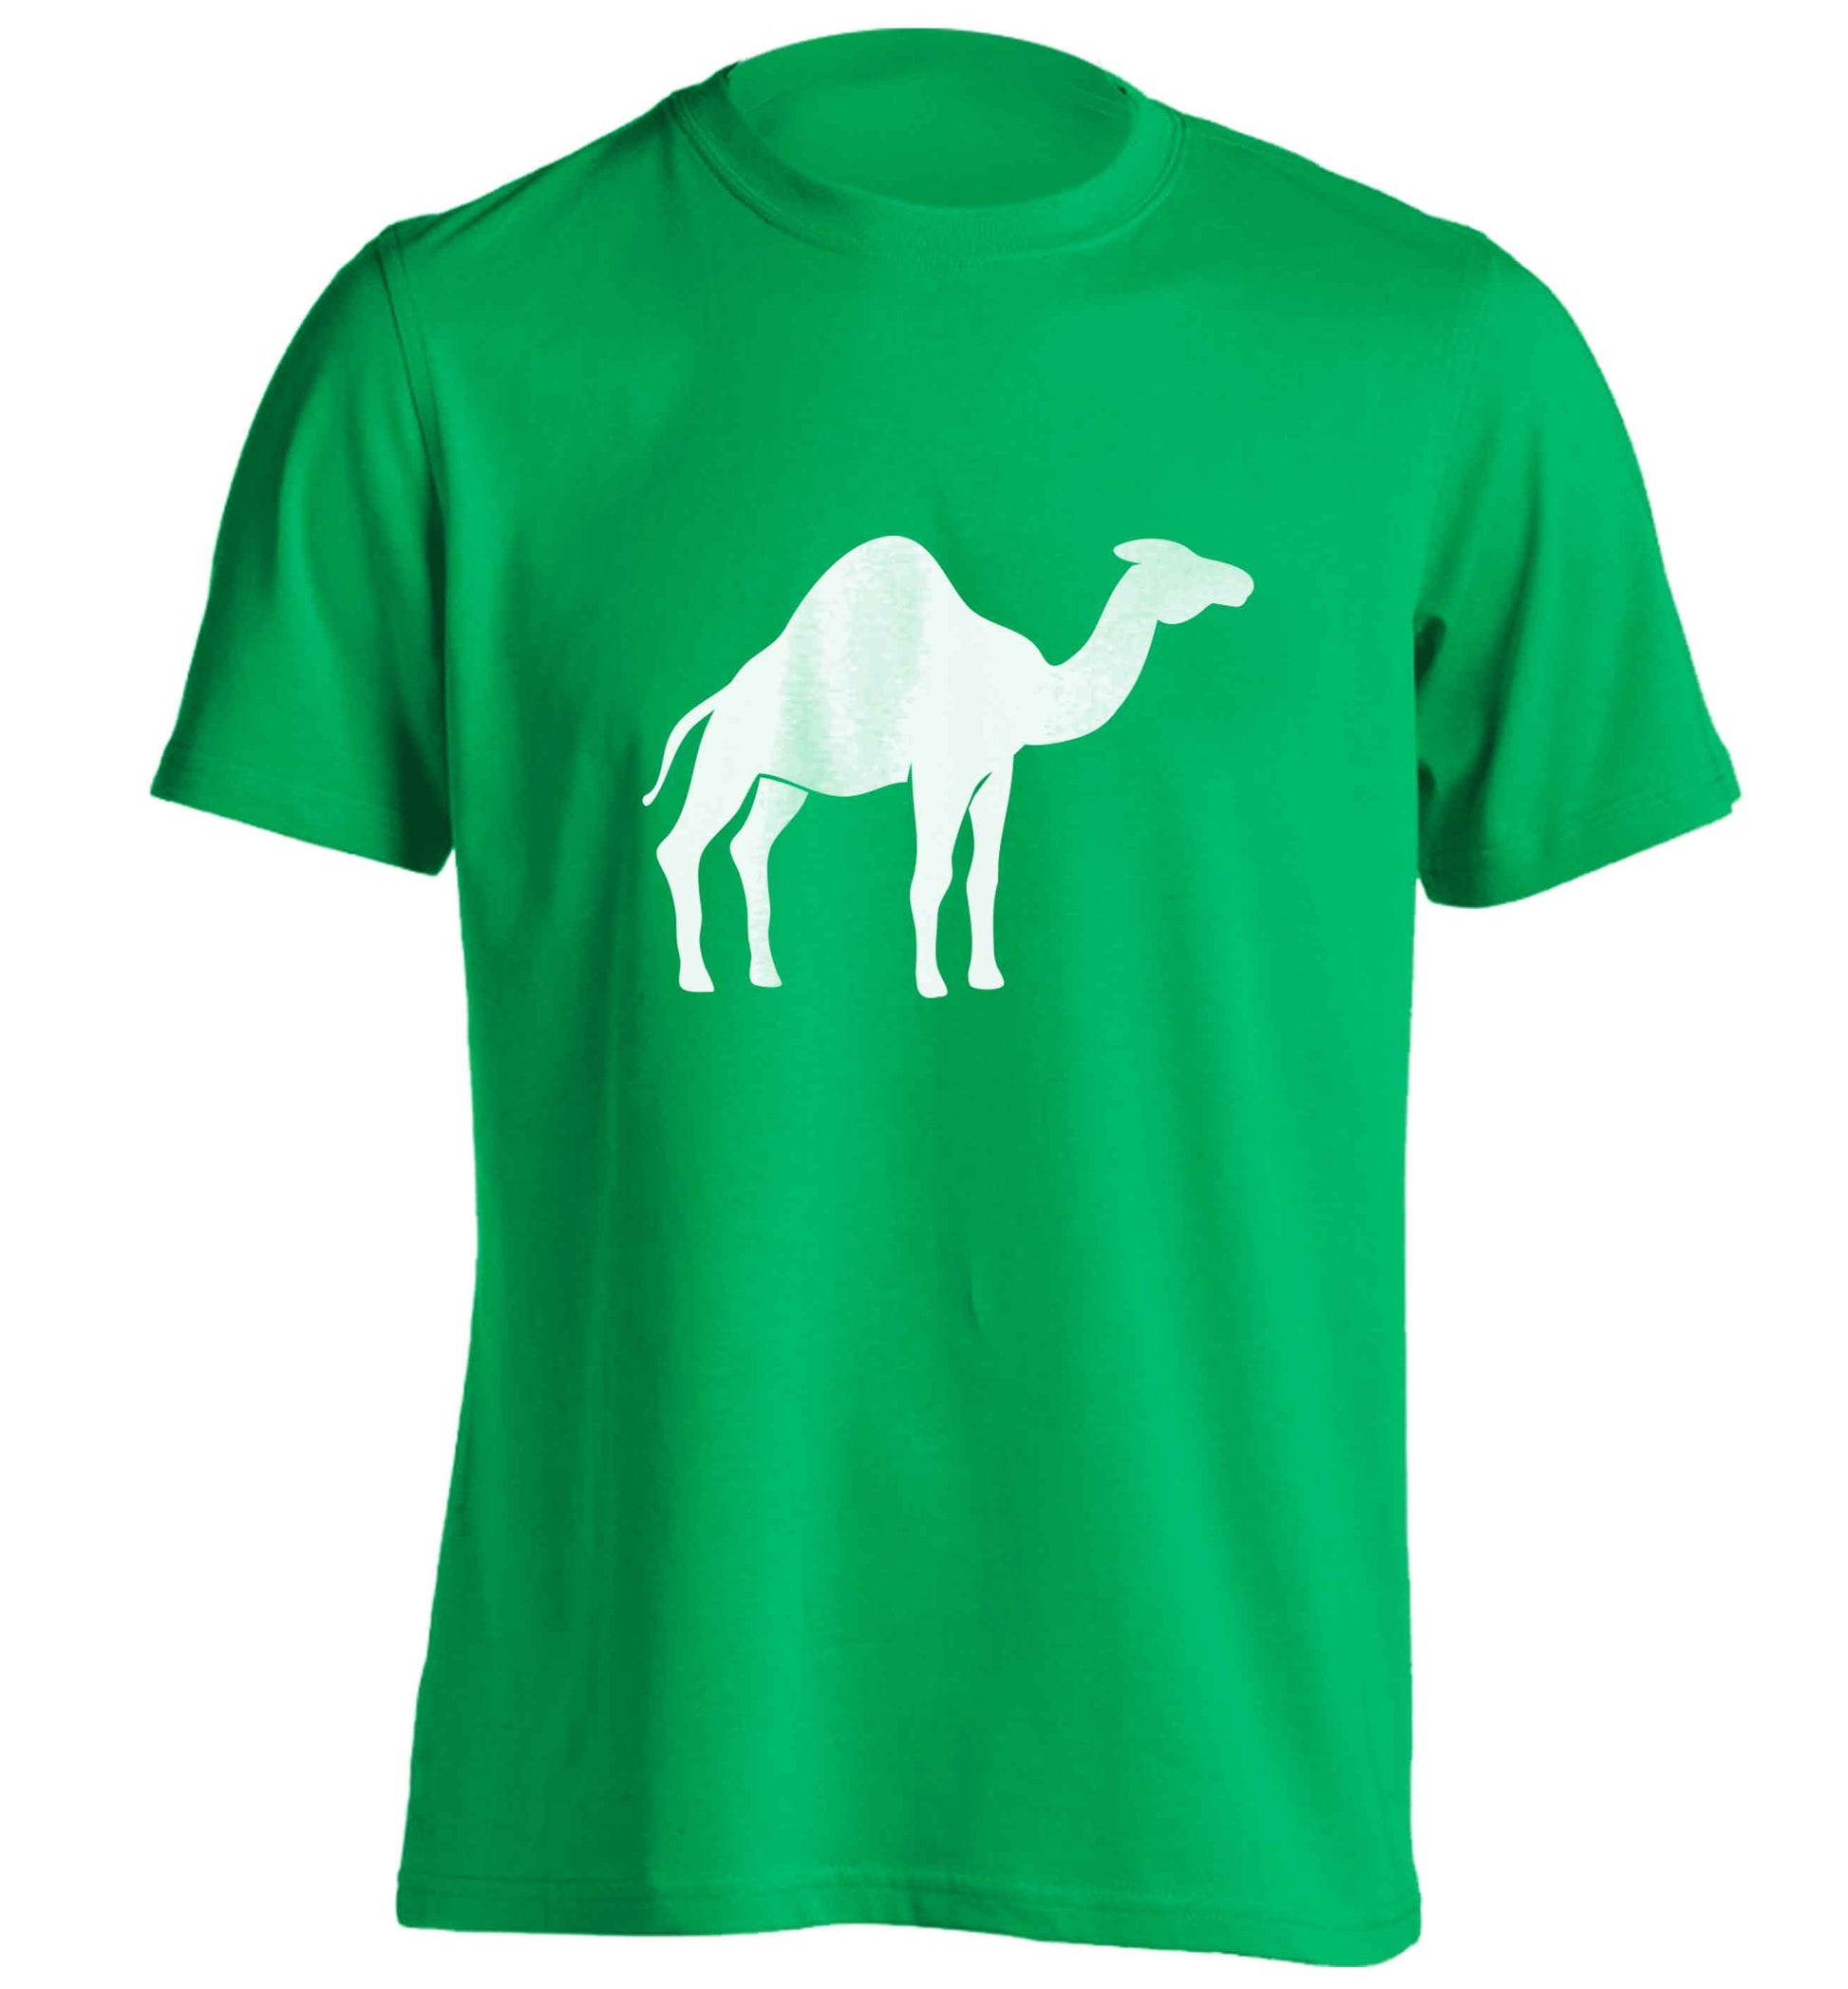 Blue camel adults unisex green Tshirt 2XL